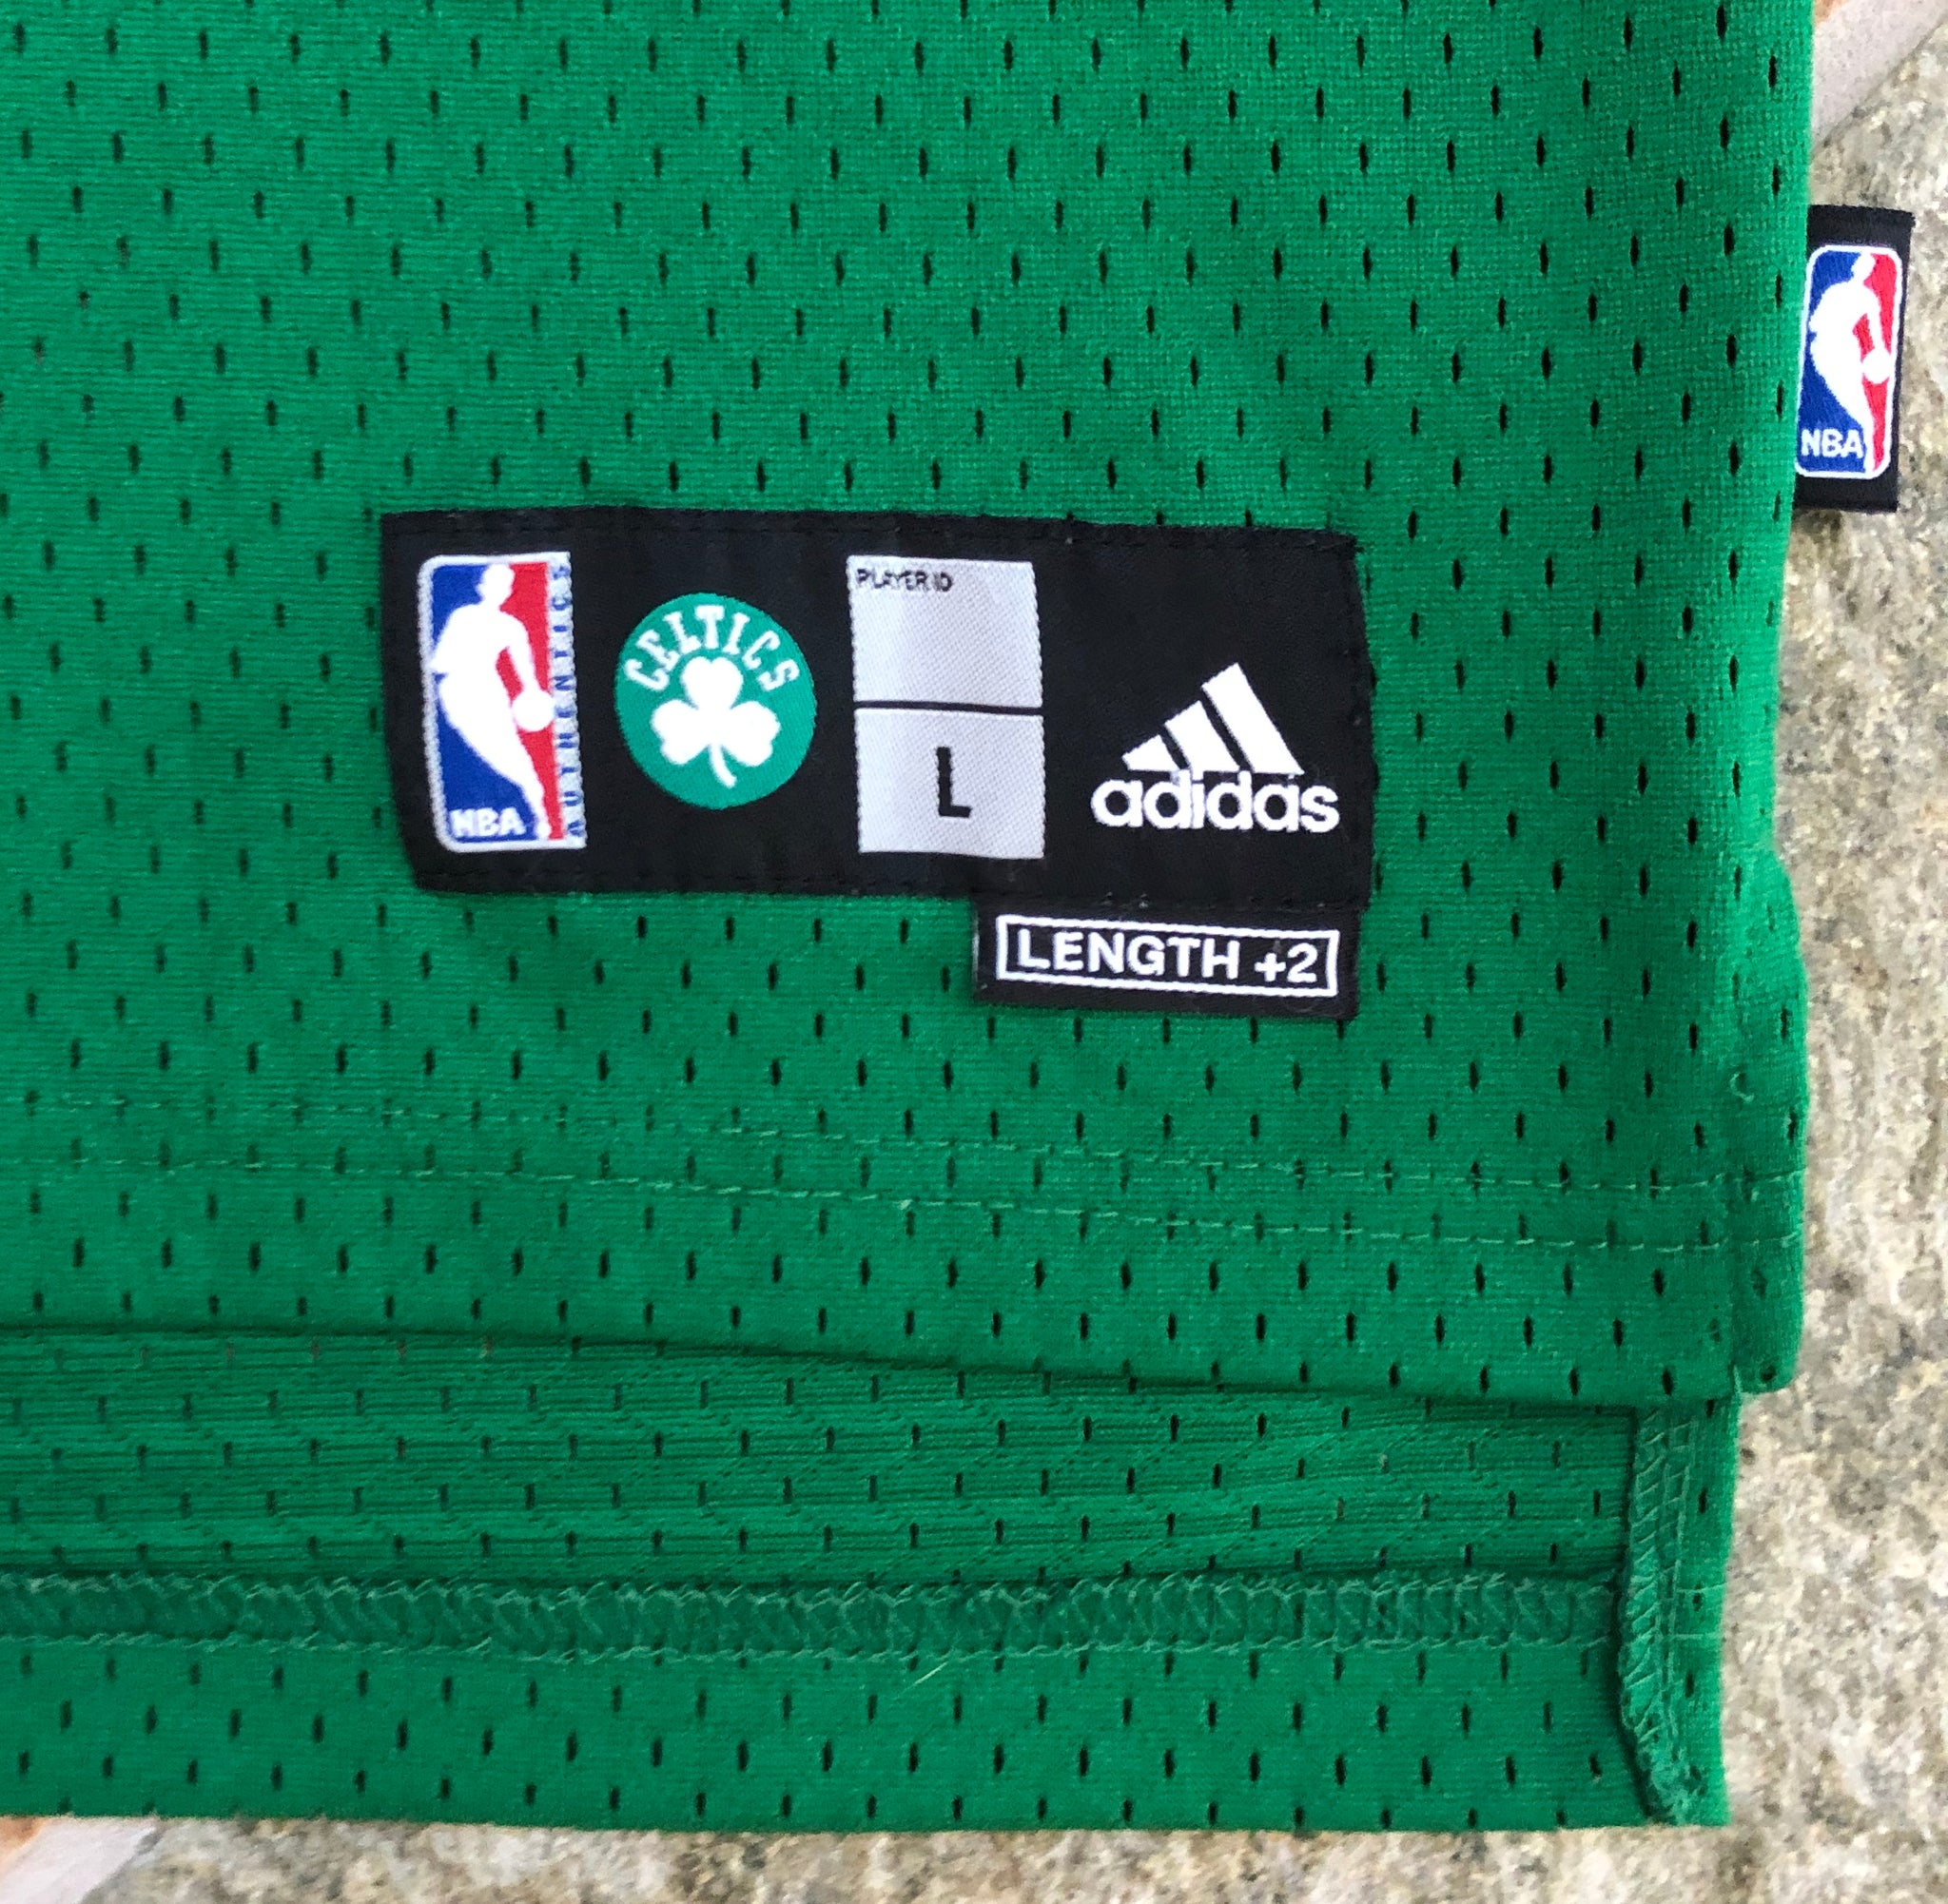 Boston Celtics Adidas Hardwood Classics Shorts size Large NEW with tags.